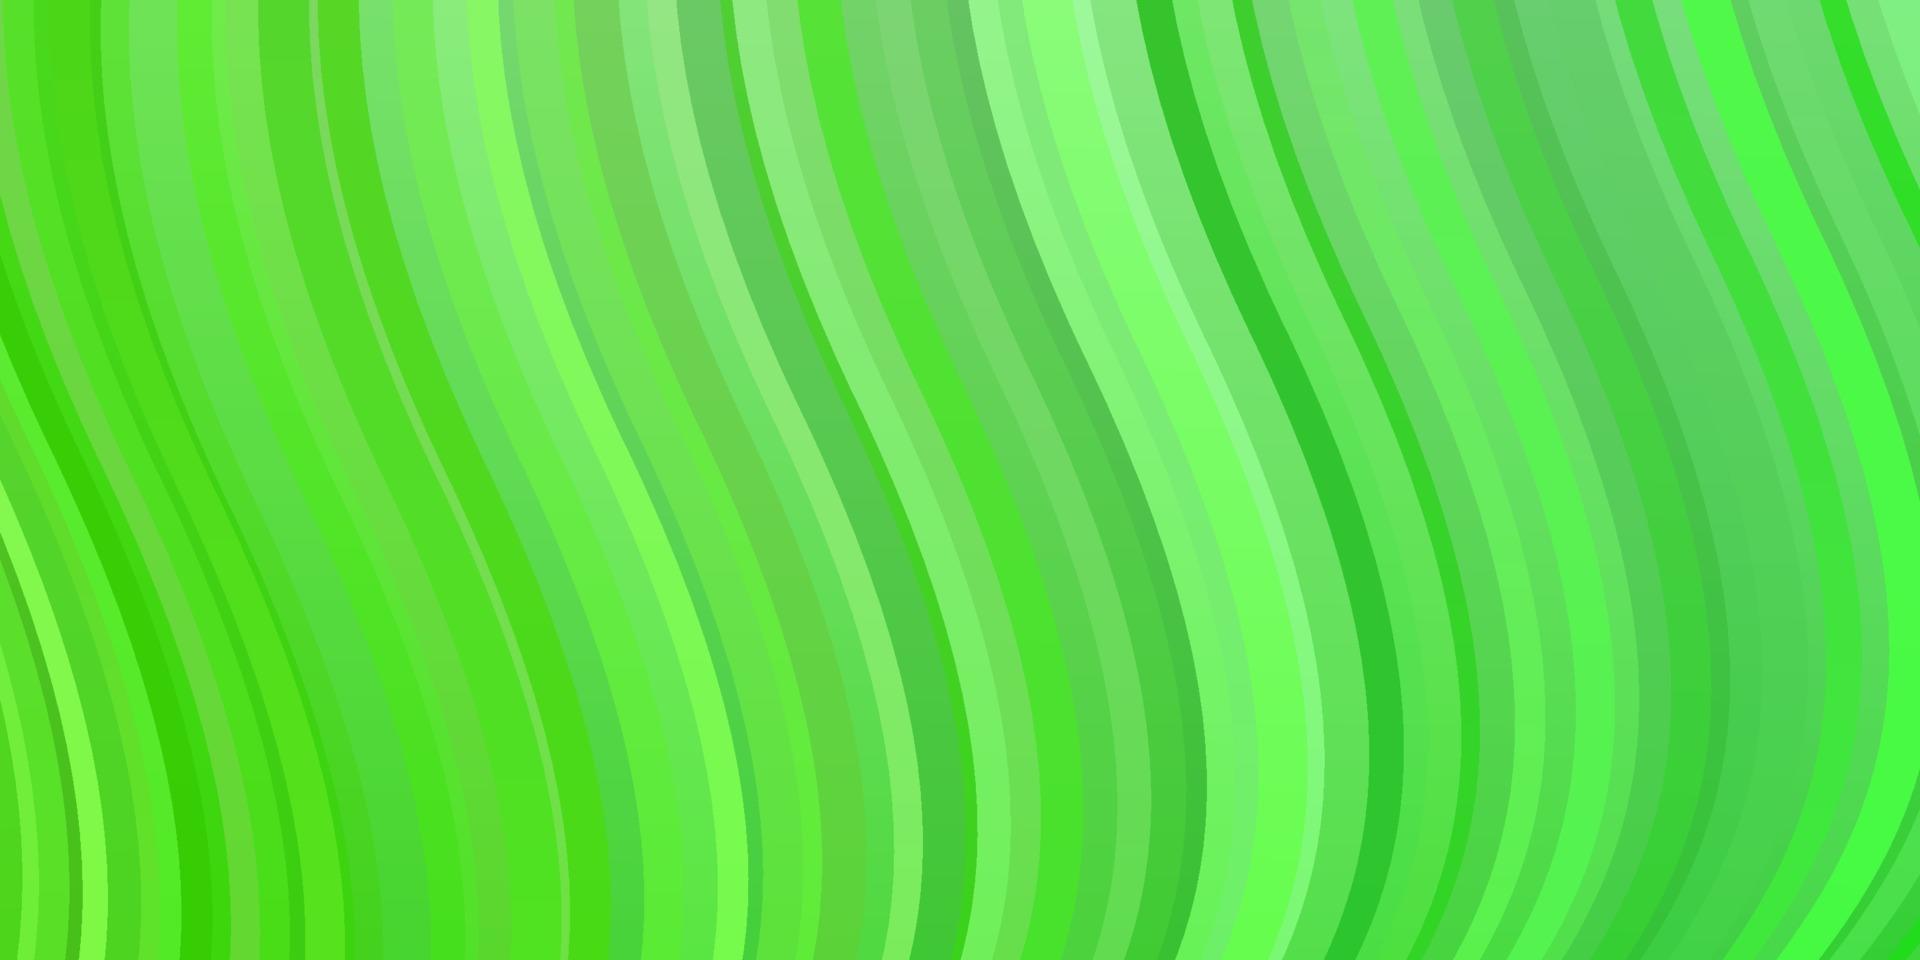 modello vettoriale verde chiaro con linee ironiche.